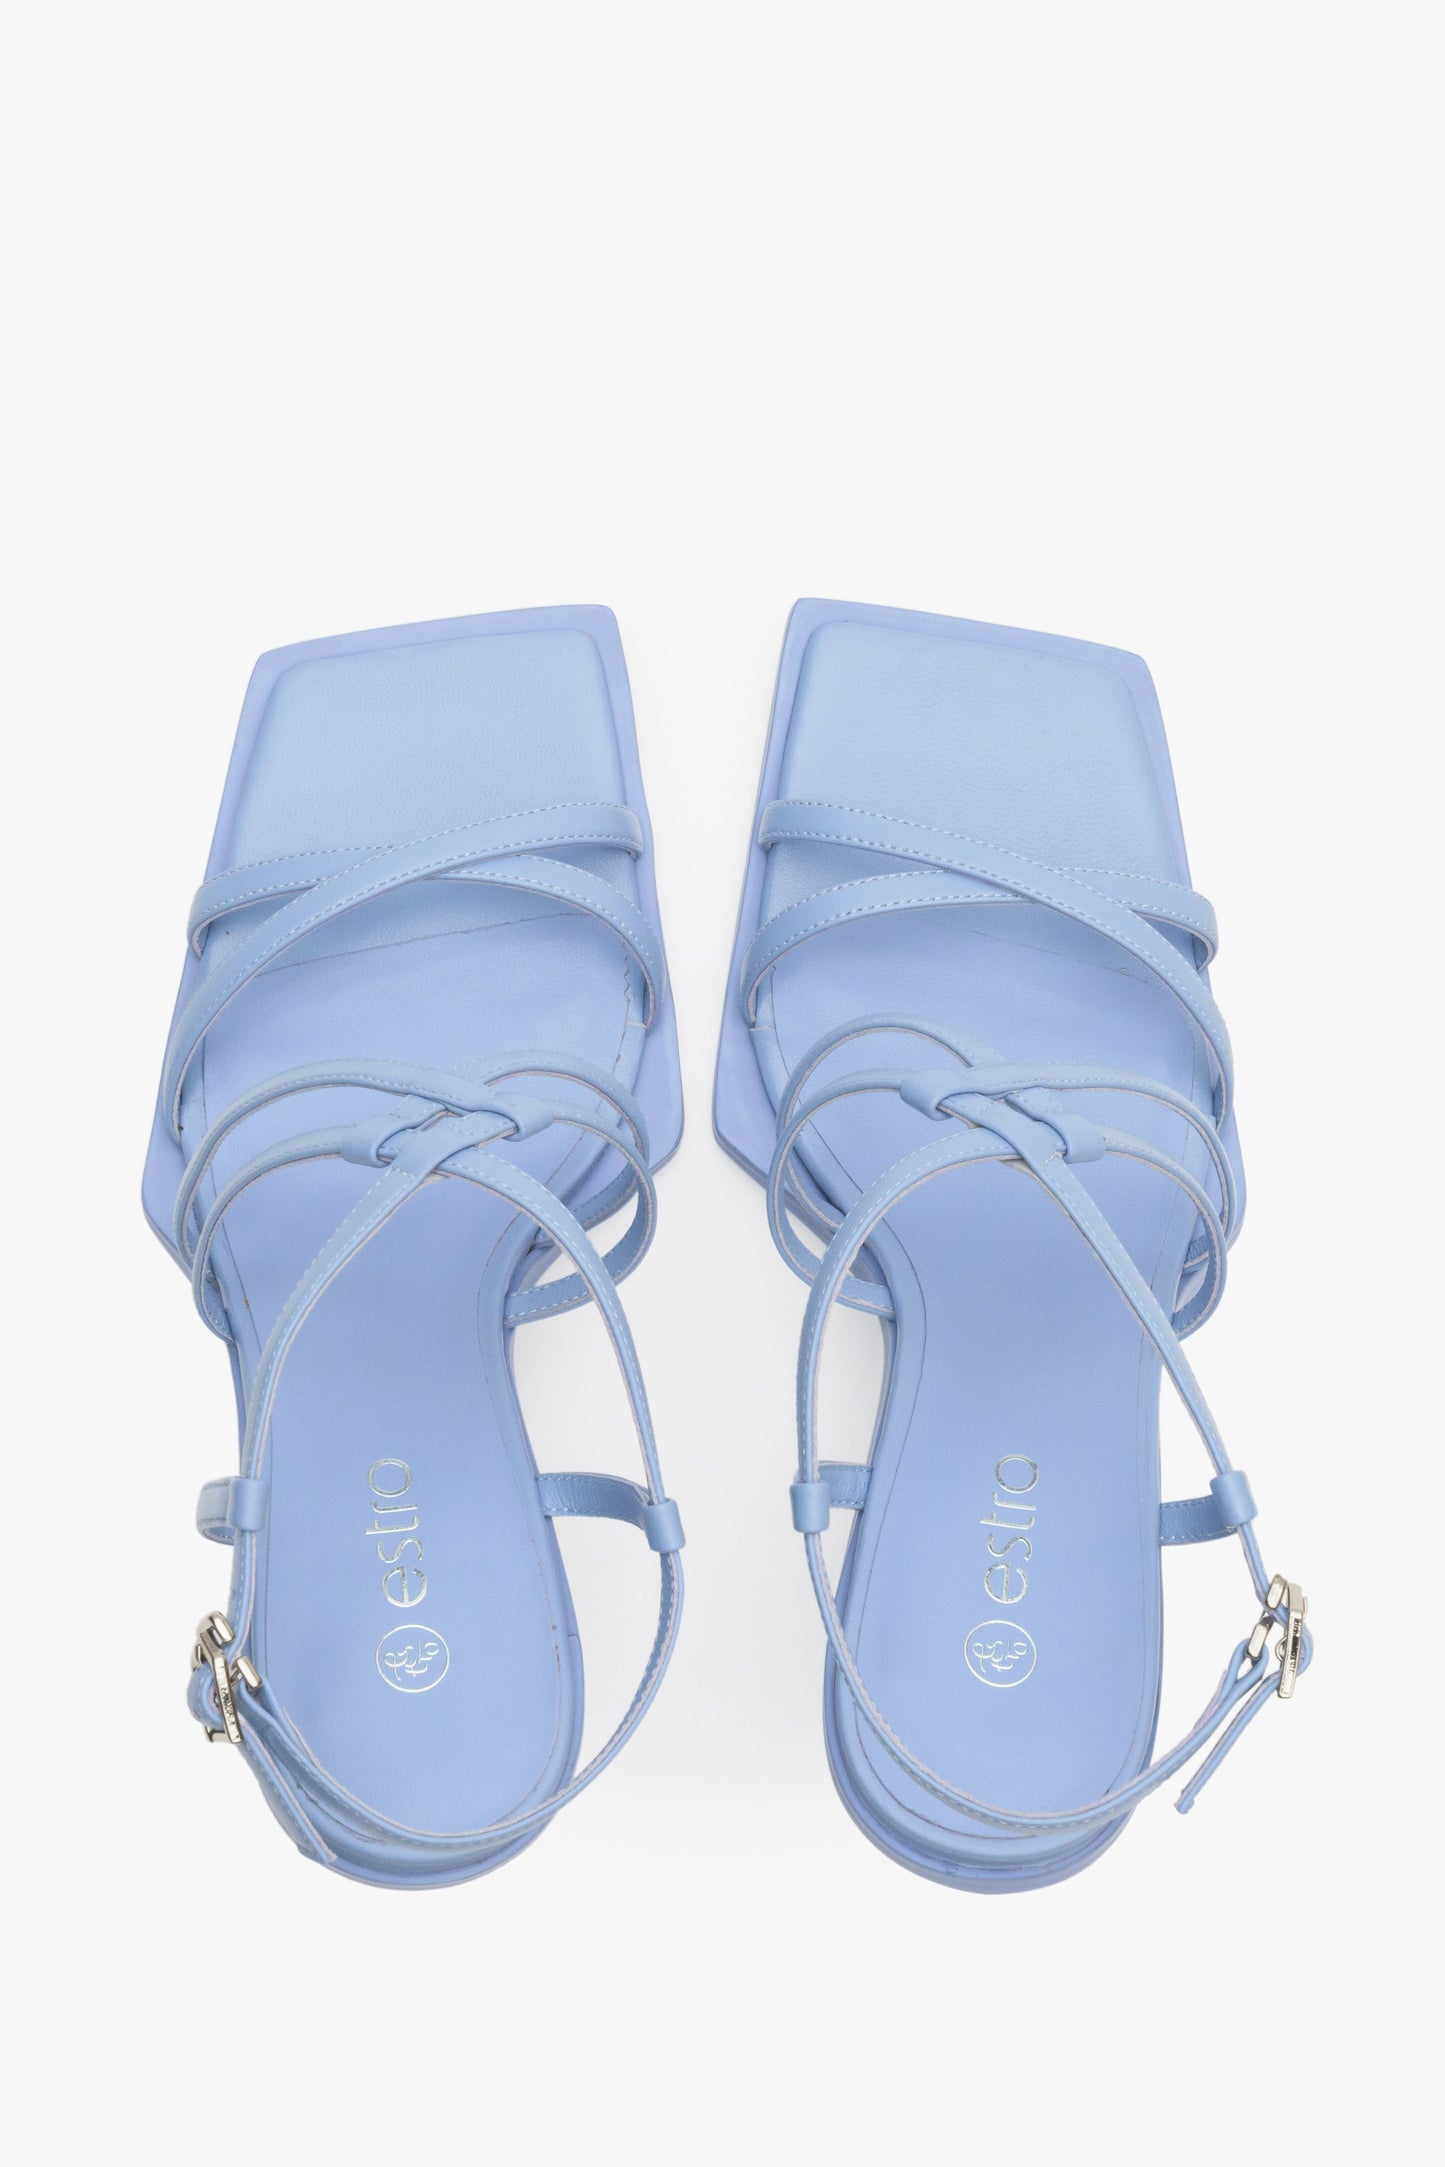 Damskie, skórzane sandały w kolorze niebieskim Estro - prezentacja modelu z góry.